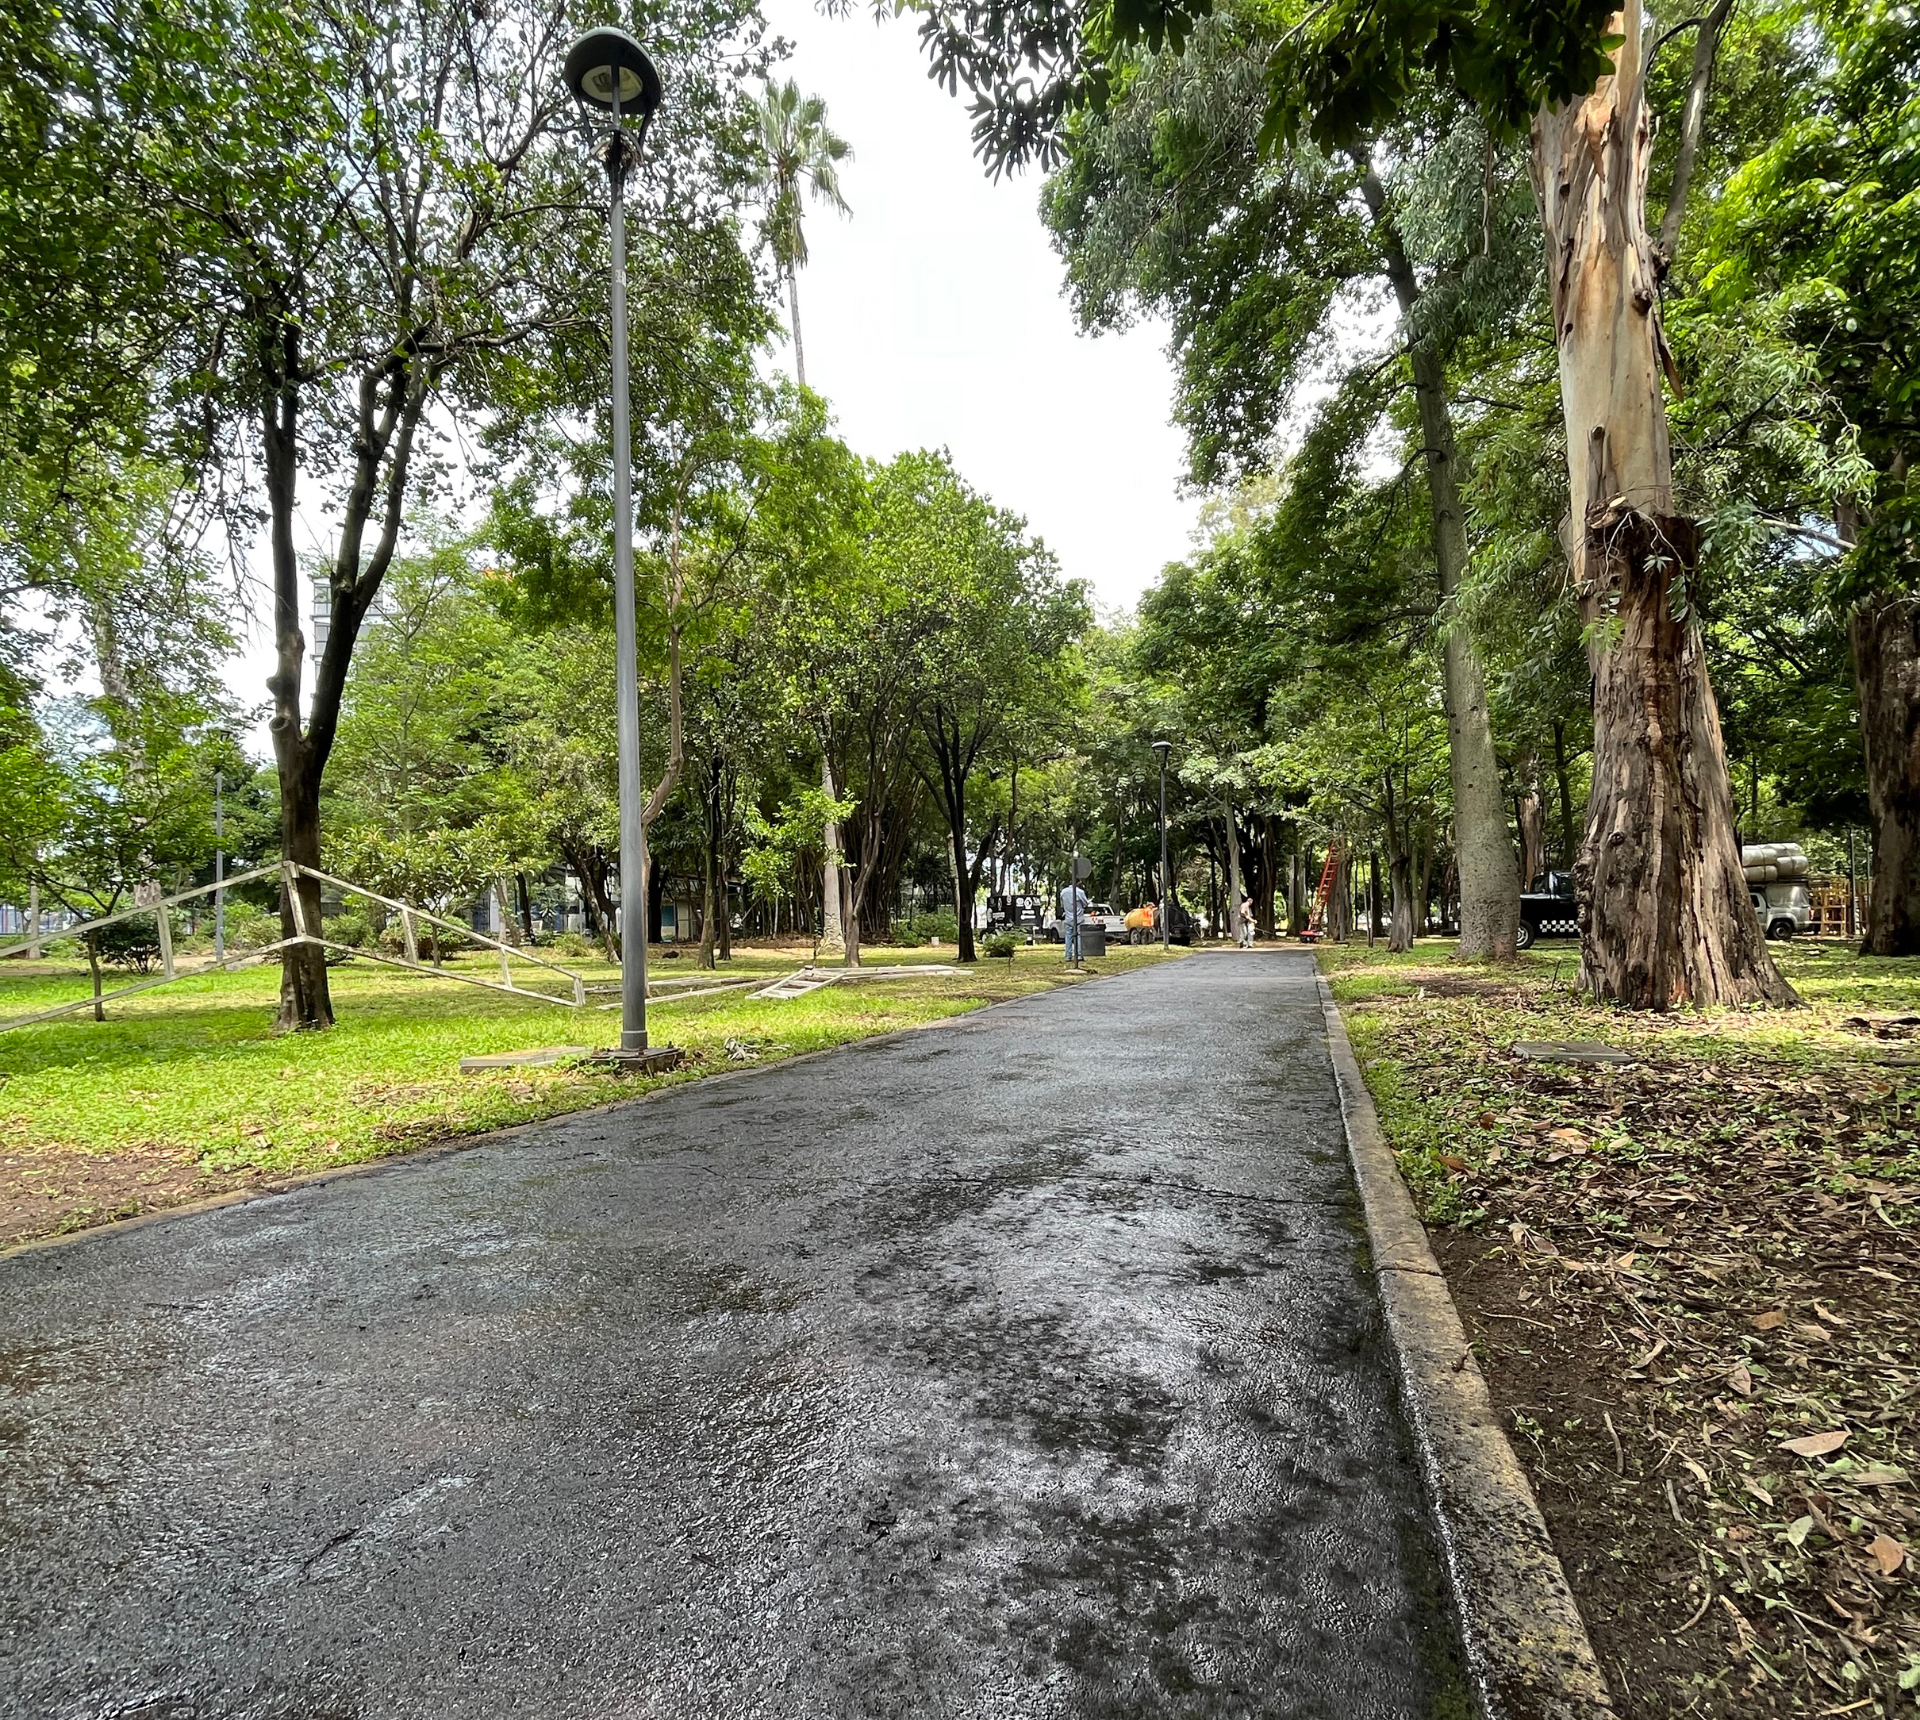 Parque Agua Azul